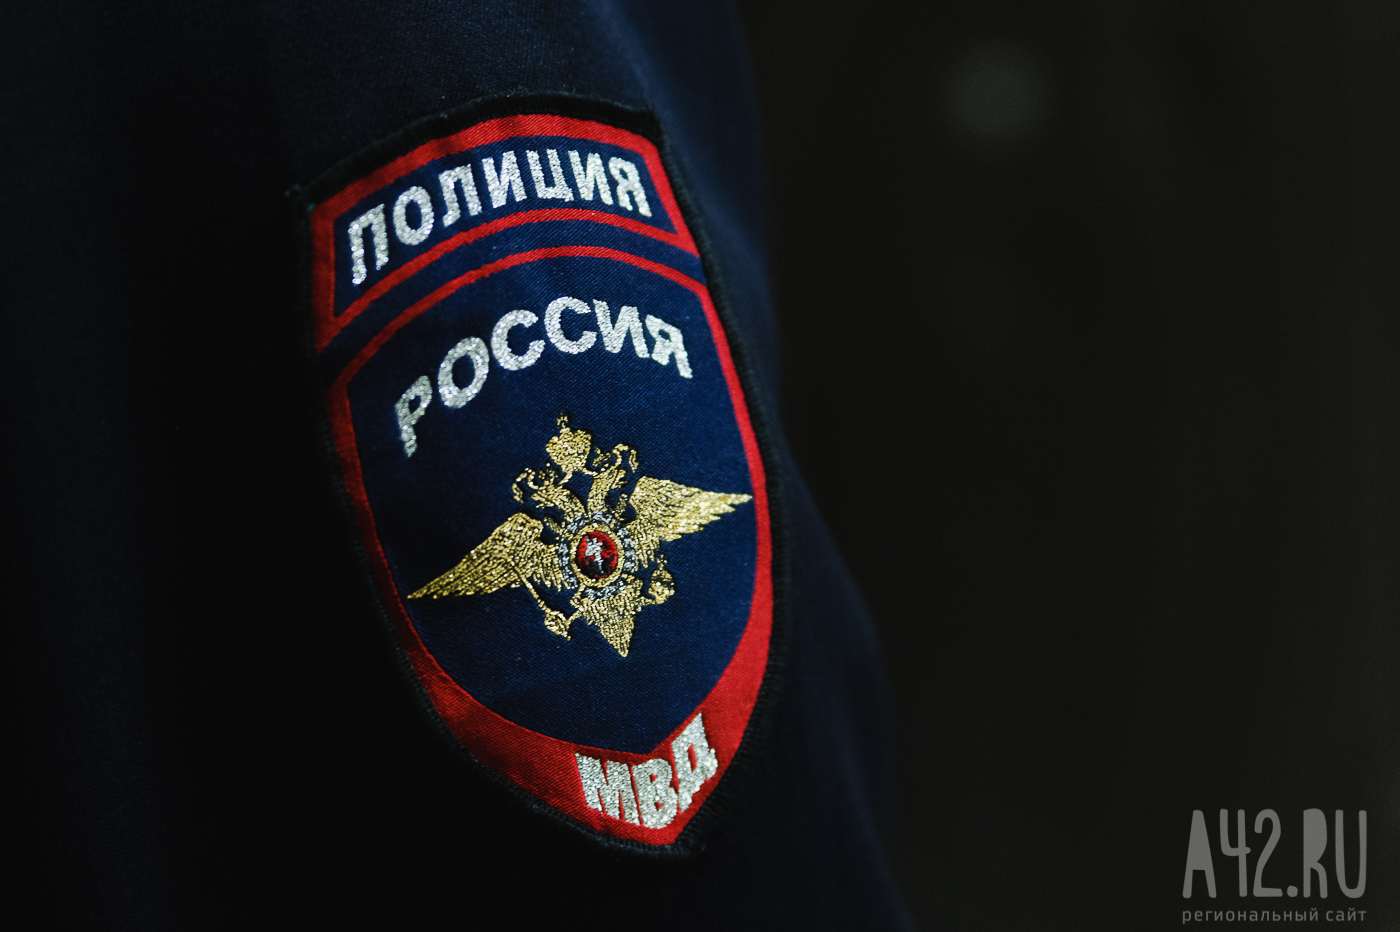 В Топки, где нашли погибшую 12-летнюю девочку, направлены дополнительные силы полиции Кузбасса